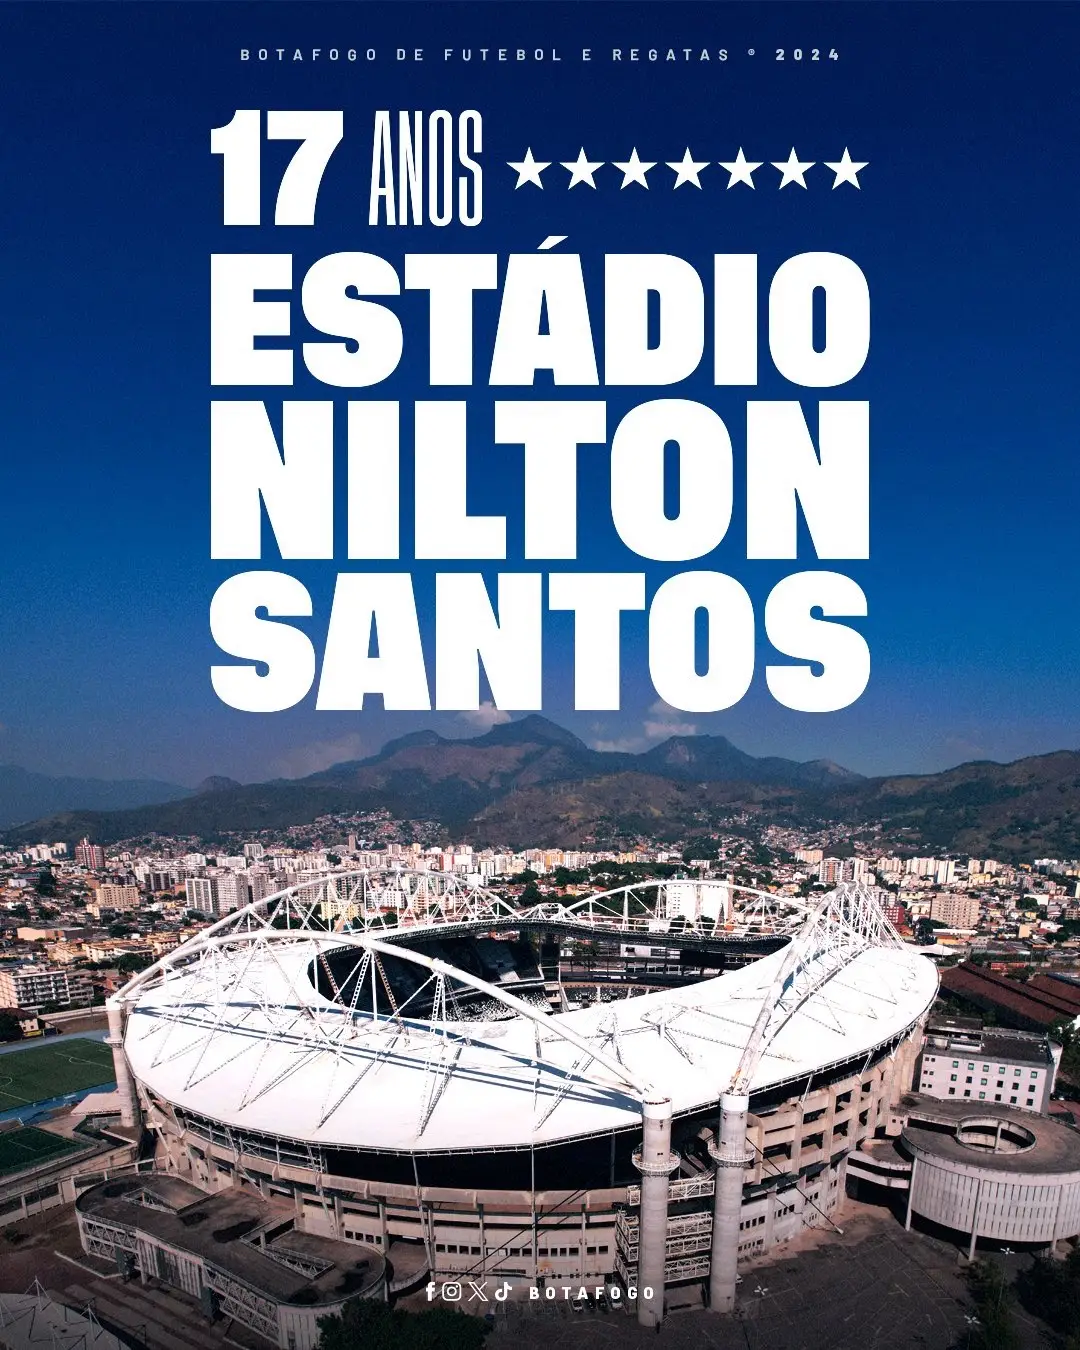 Casa do BOTAFOGO e da torcida mais apaixonada do mundo, o Estádio Nilton Santos completa 17 anos hoje. 🏟️🔥 #Niltão17Anos #football #botafogo 